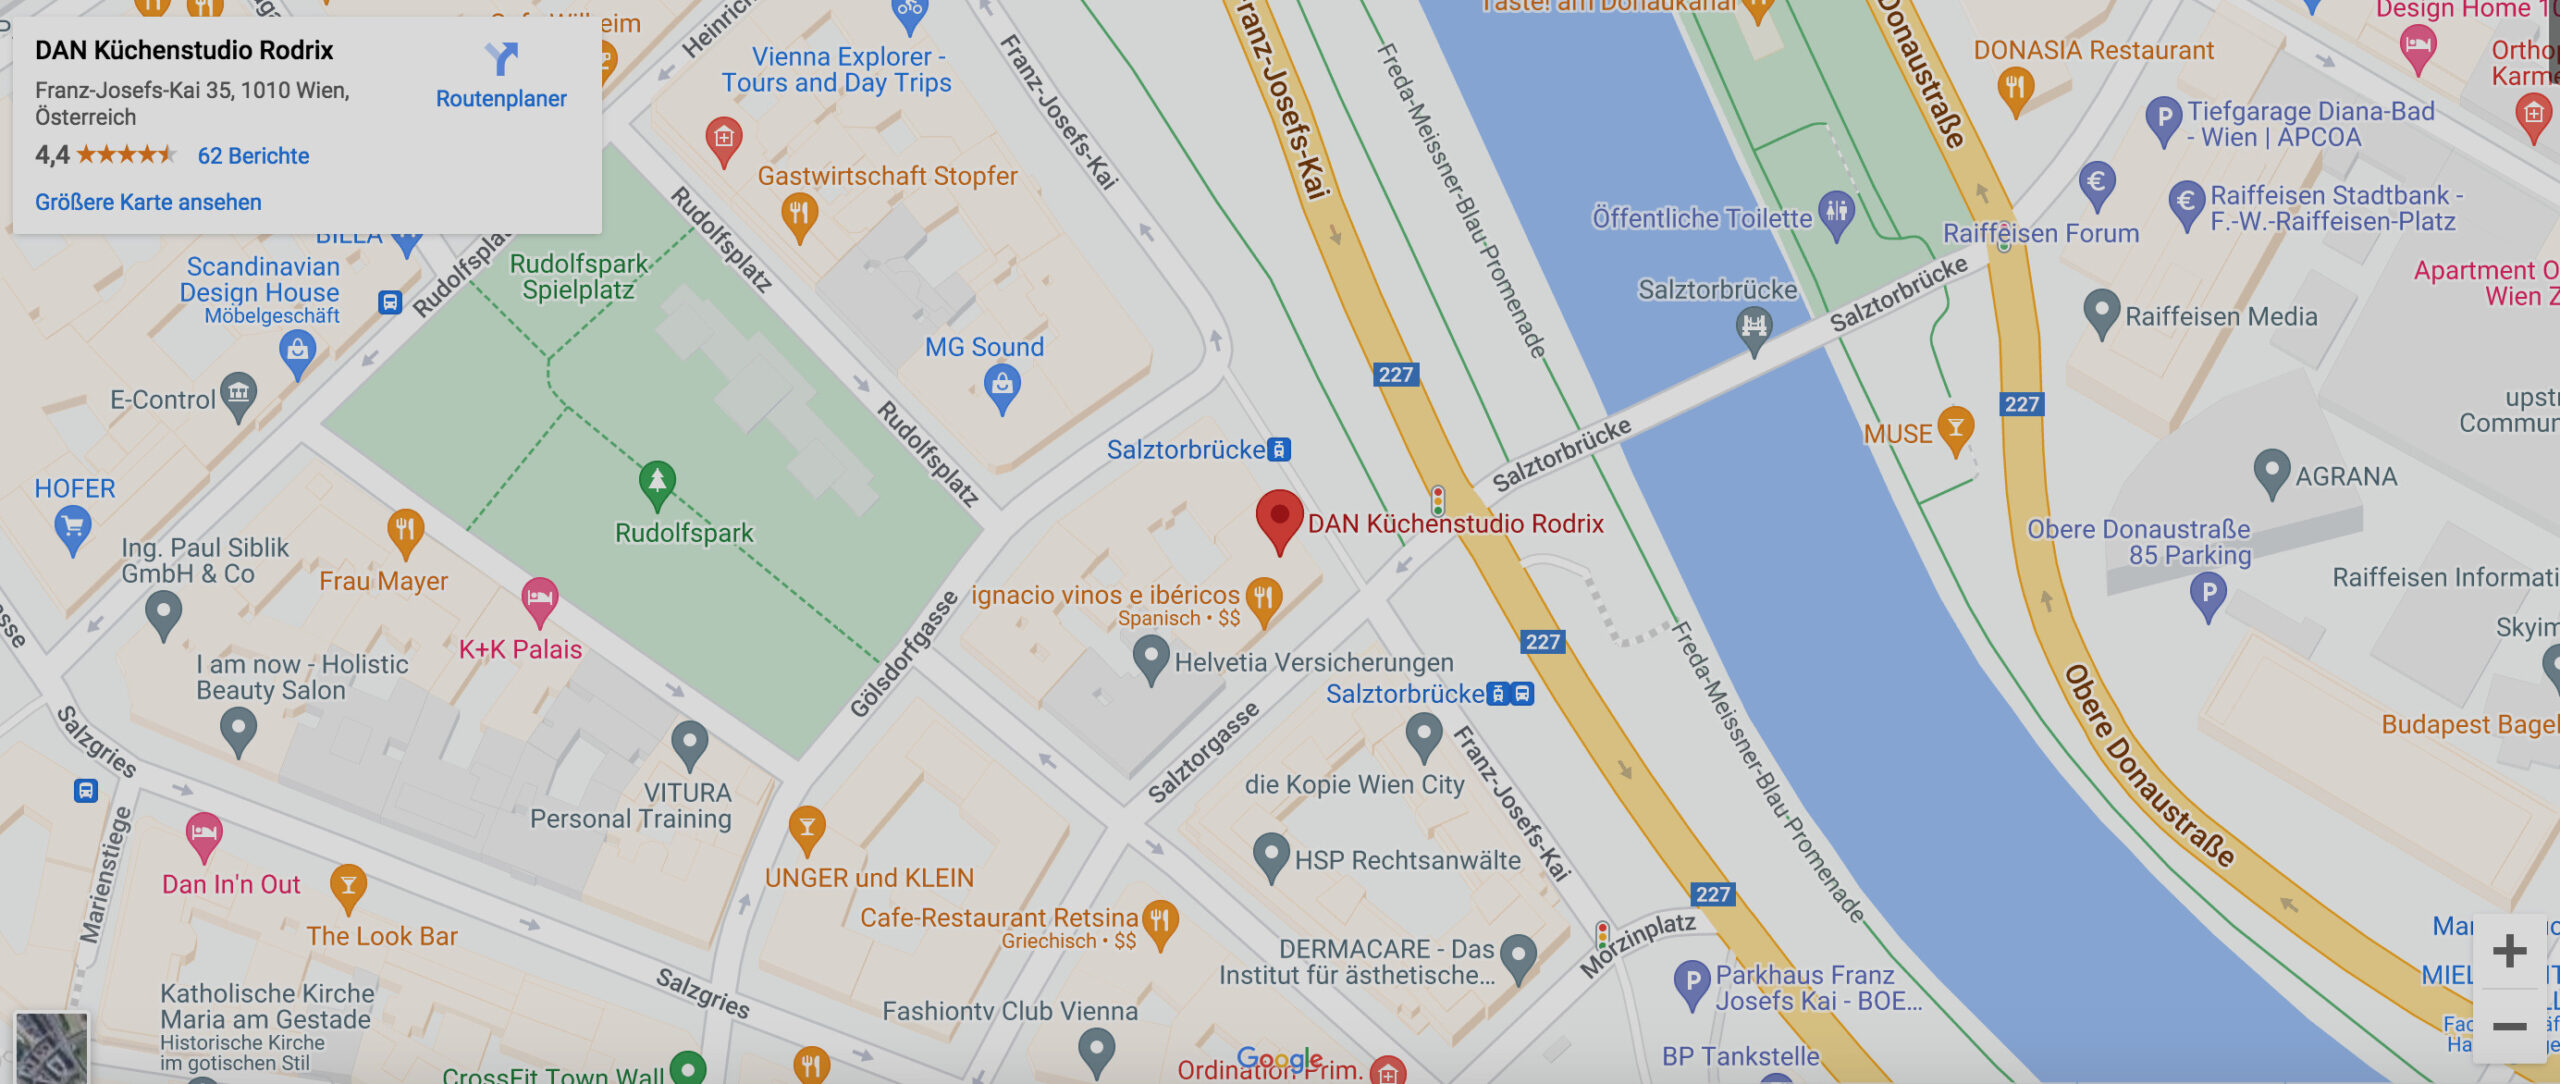 dan-rodrix-kuechen-google-maps-image